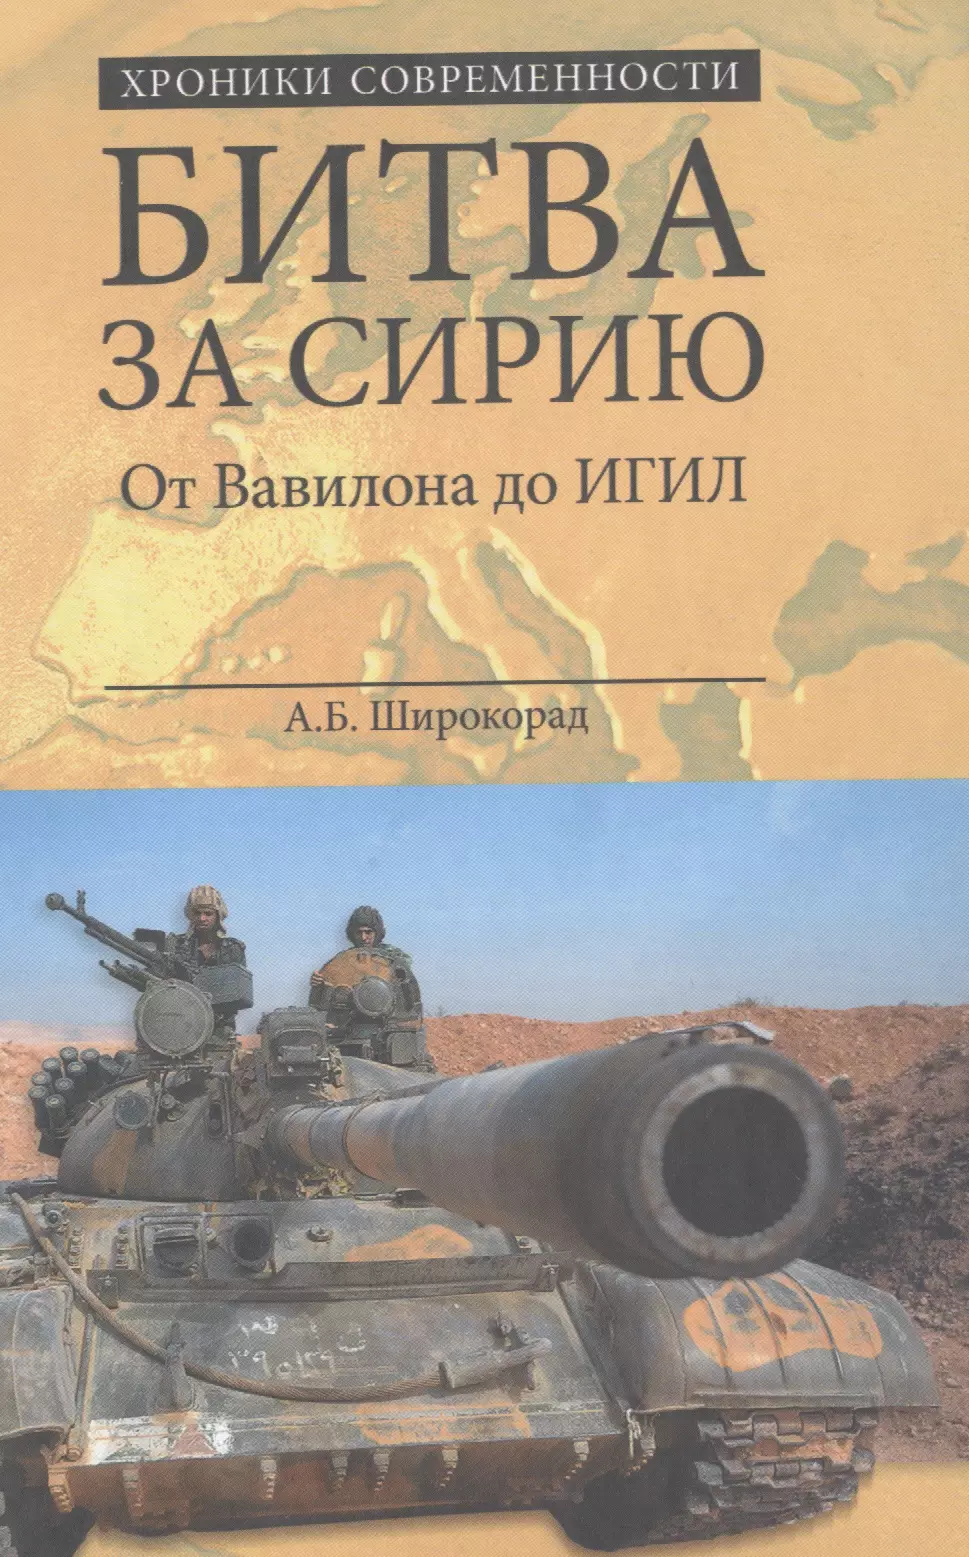 Широкорад Александр Борисович - Битва за Сирию. От Вавилона до ИГИЛ